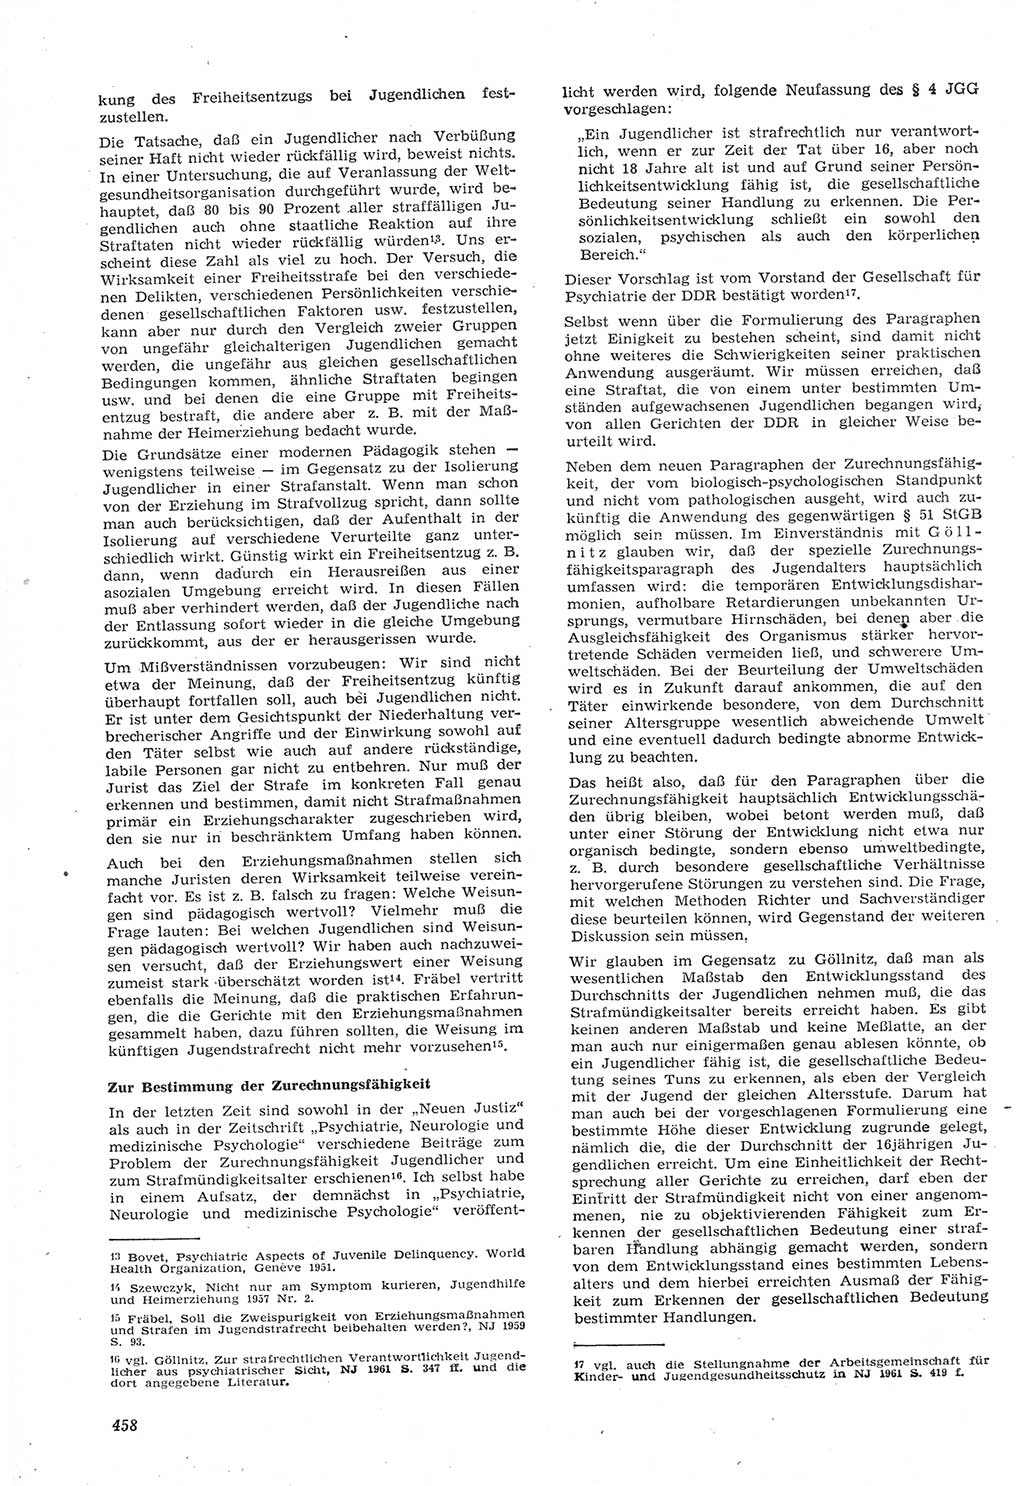 Neue Justiz (NJ), Zeitschrift für Recht und Rechtswissenschaft [Deutsche Demokratische Republik (DDR)], 15. Jahrgang 1961, Seite 458 (NJ DDR 1961, S. 458)